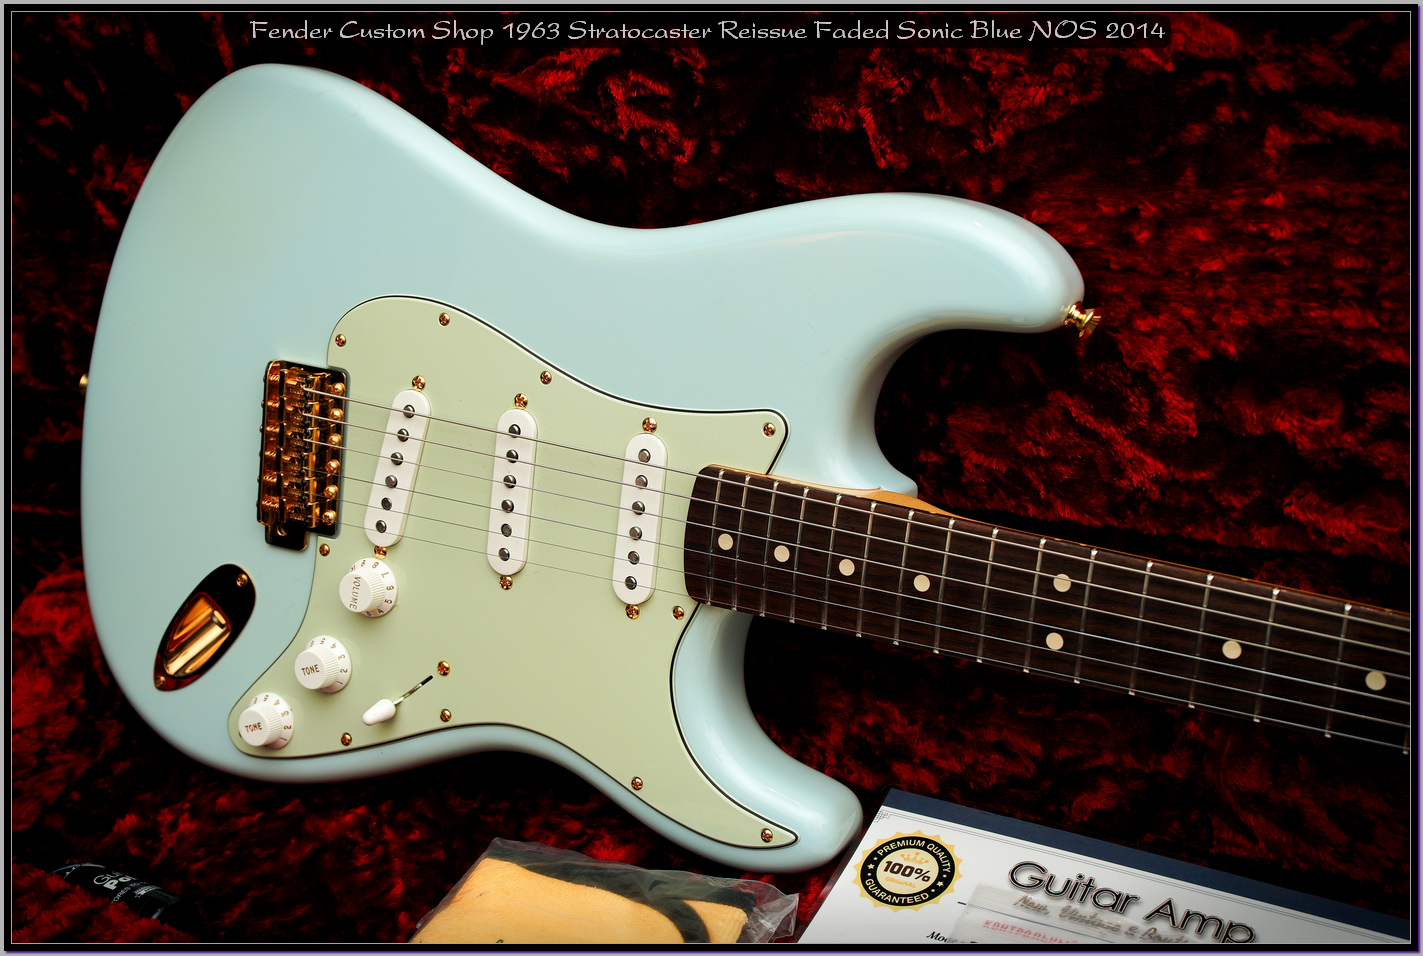 Fender Custom Shop 1963 Stratocaster Reissue Faded Sonic Blue NOS 2014 22_x1400.jpg